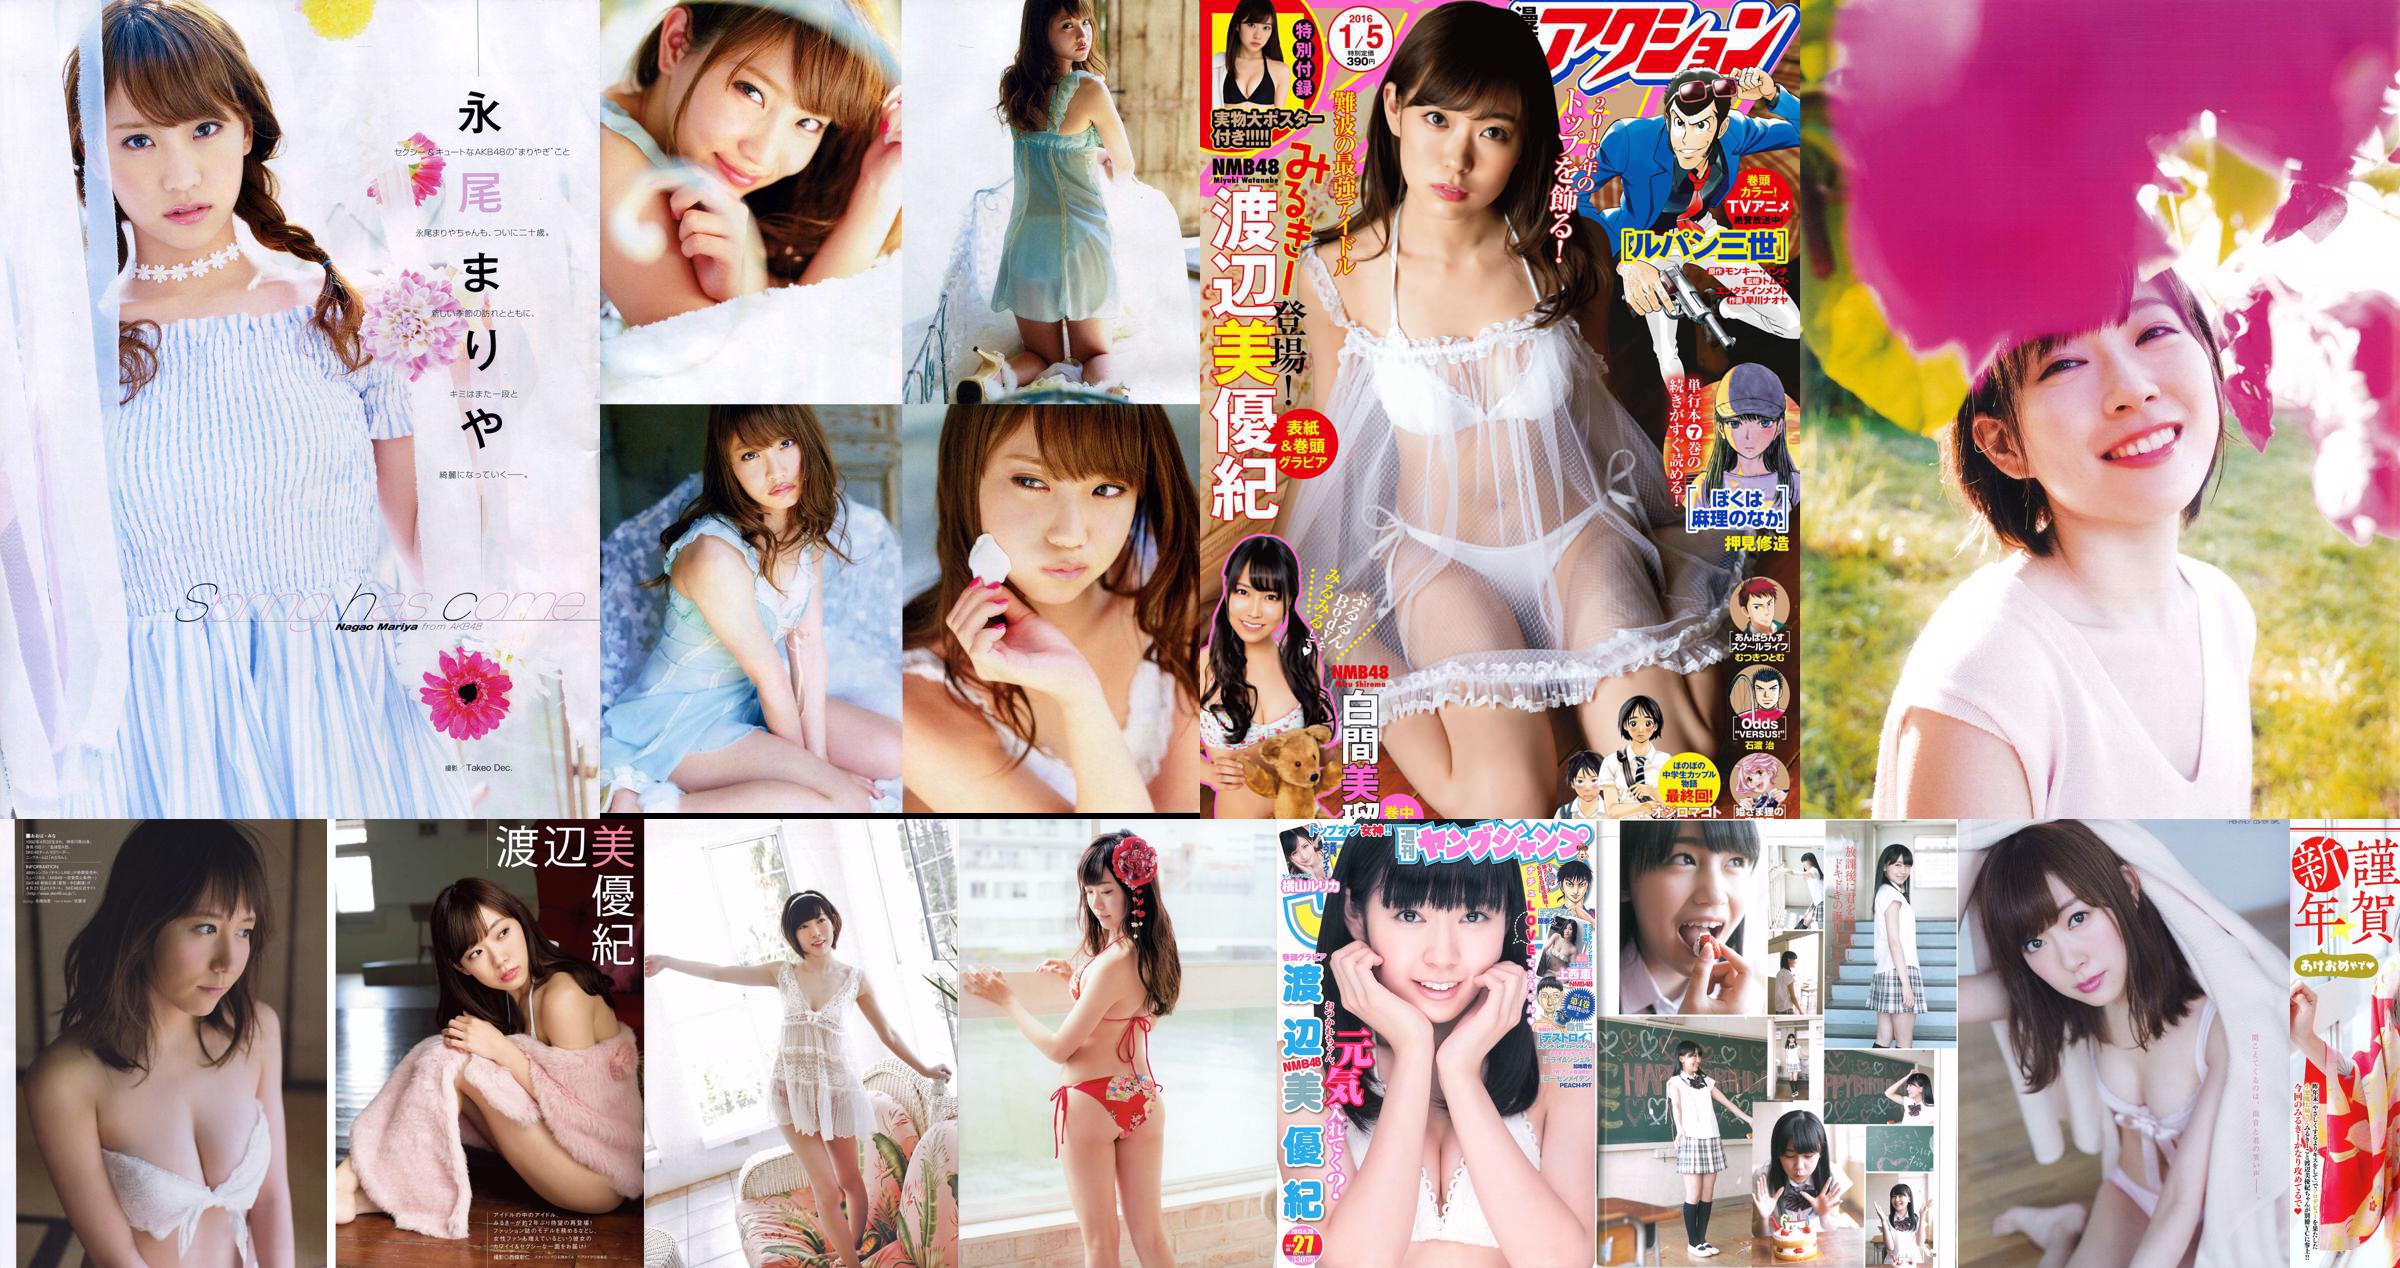 Miyuki Watanabe The most Uemoga [Young Animal] 2012 No.24 Photo Magazine No.0986dc Pagina 1